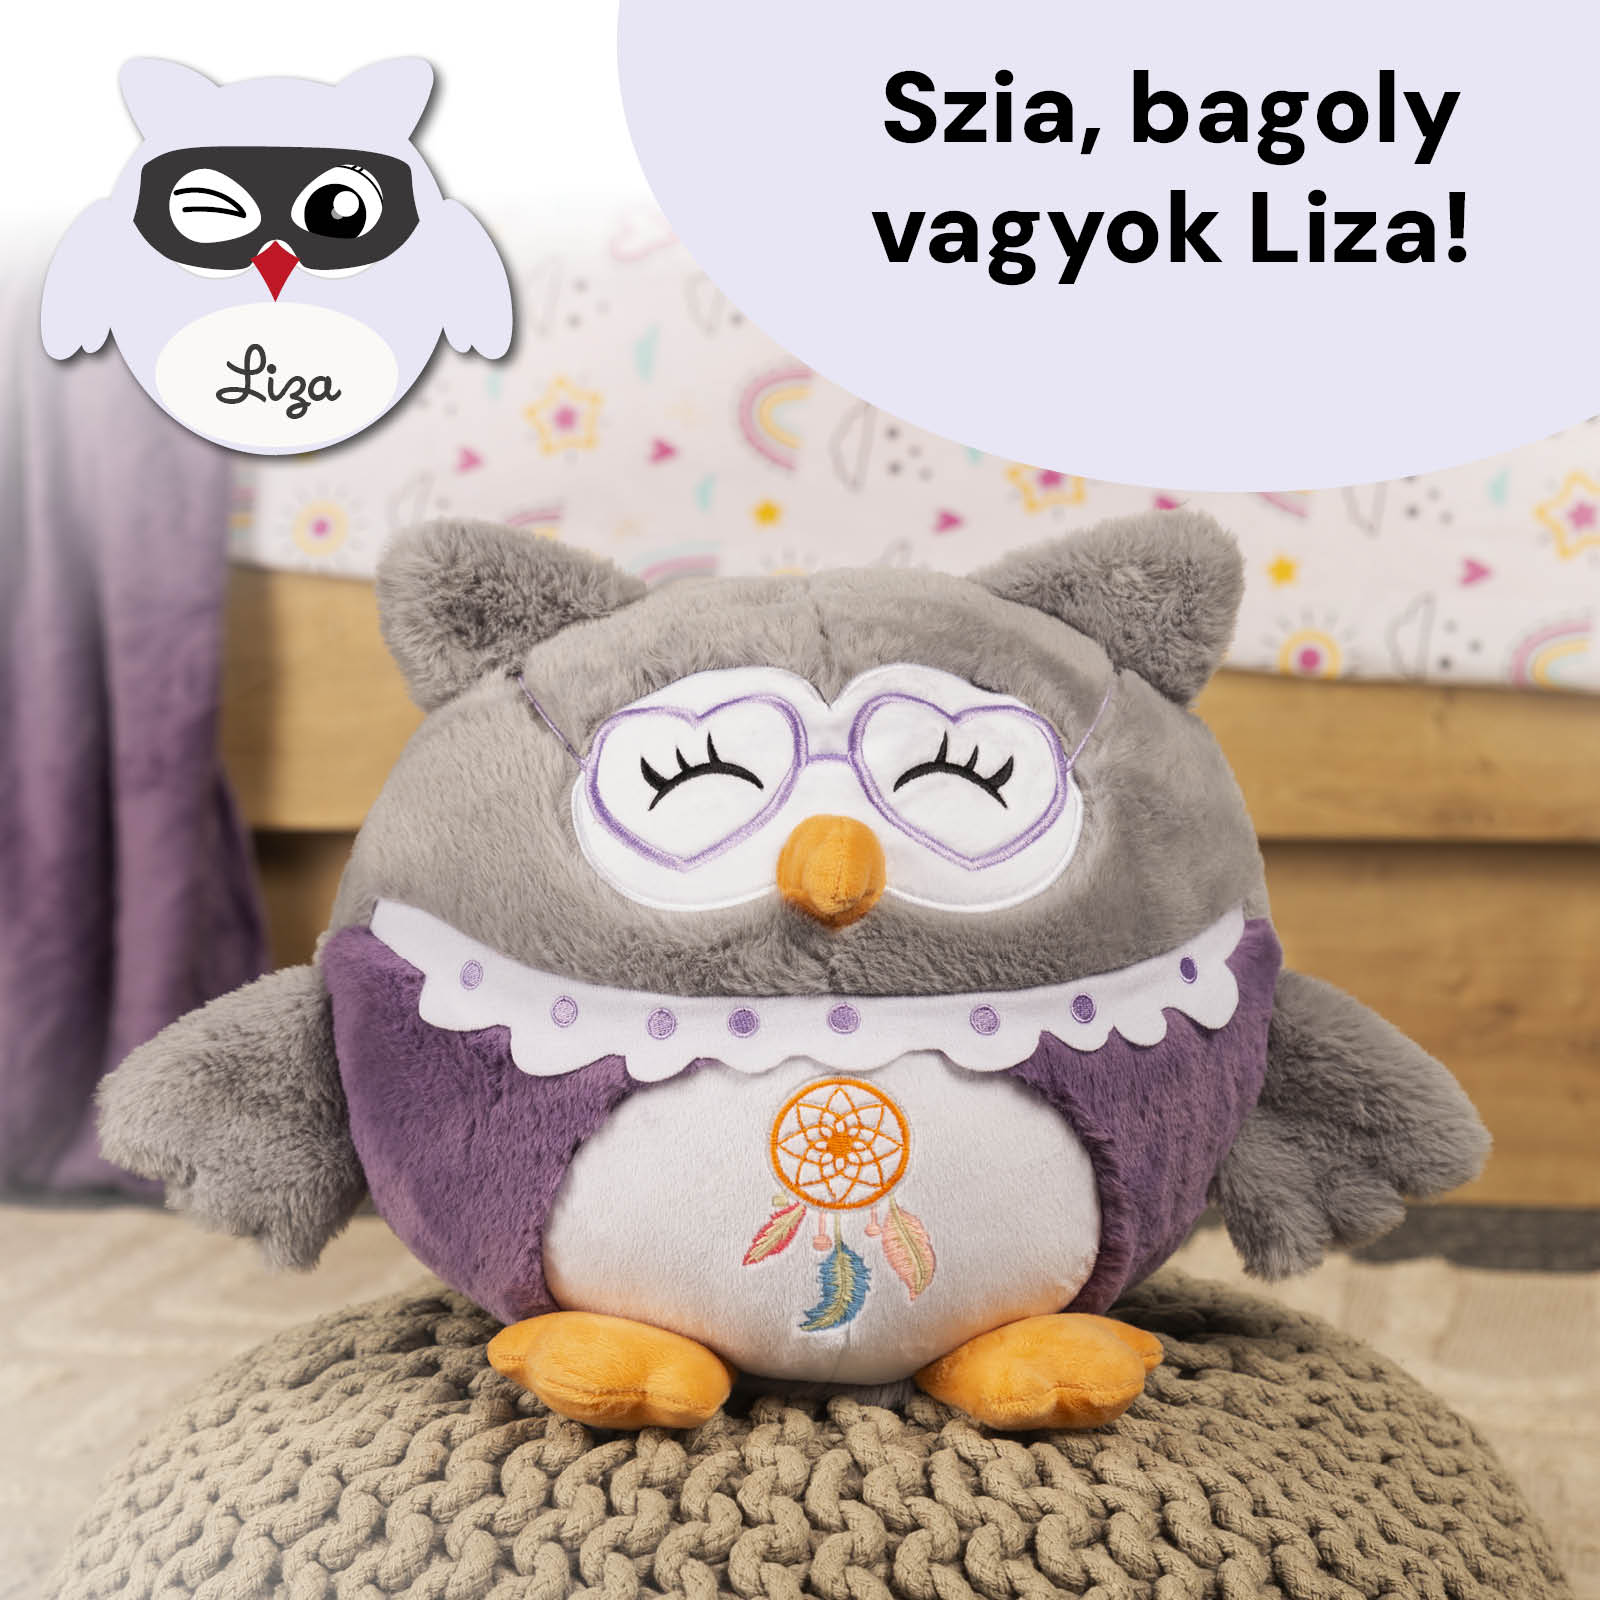 Bagoly Liza nagyi - 3in1